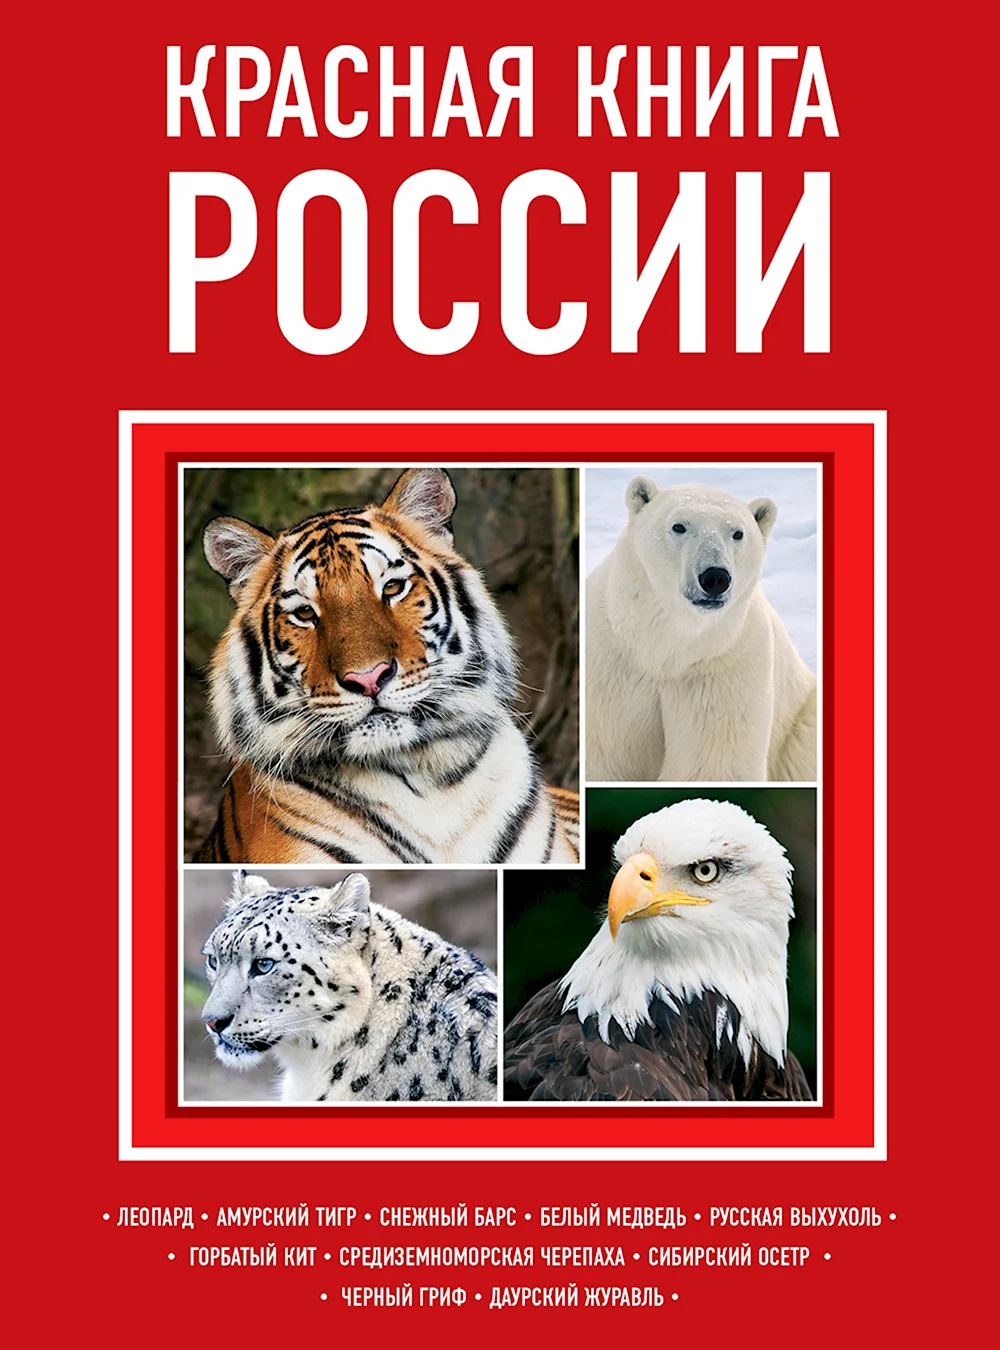 Обложка красной книги России